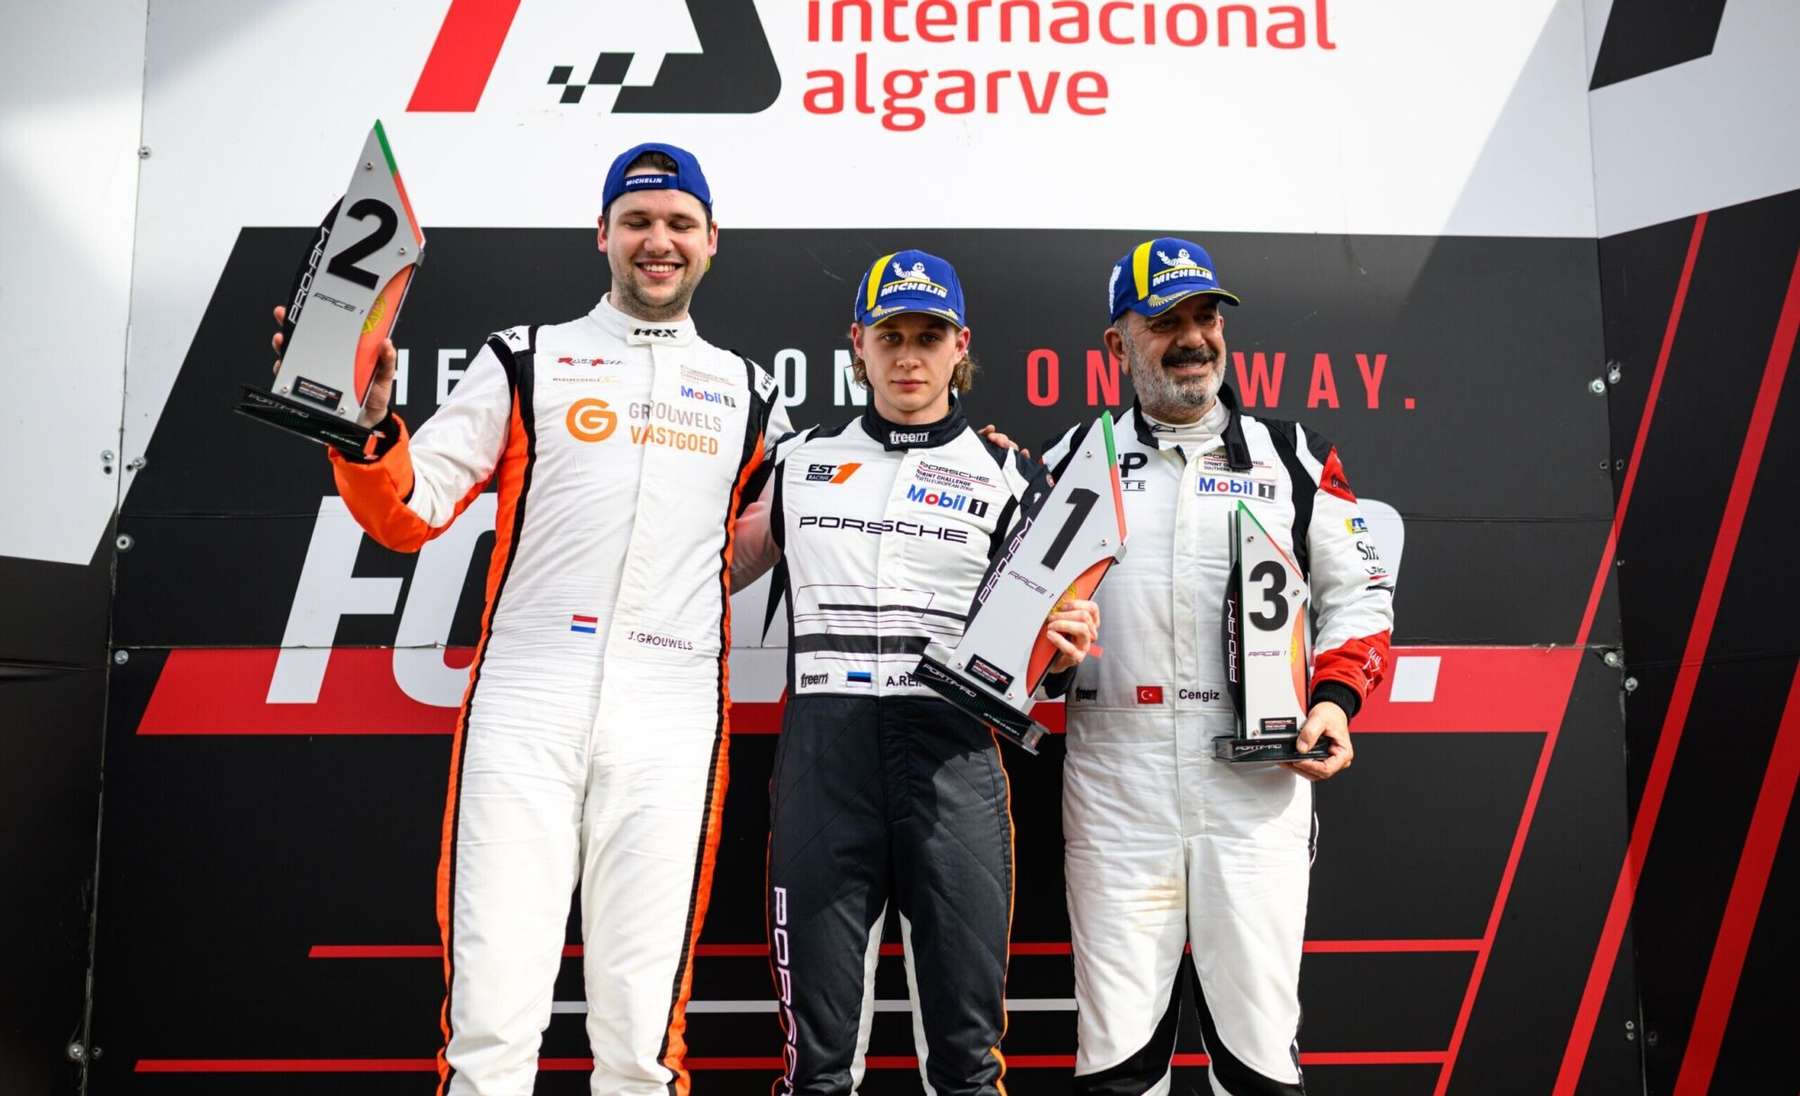 Alex Reimann (keskel) saavutas Portugalis esikoha.